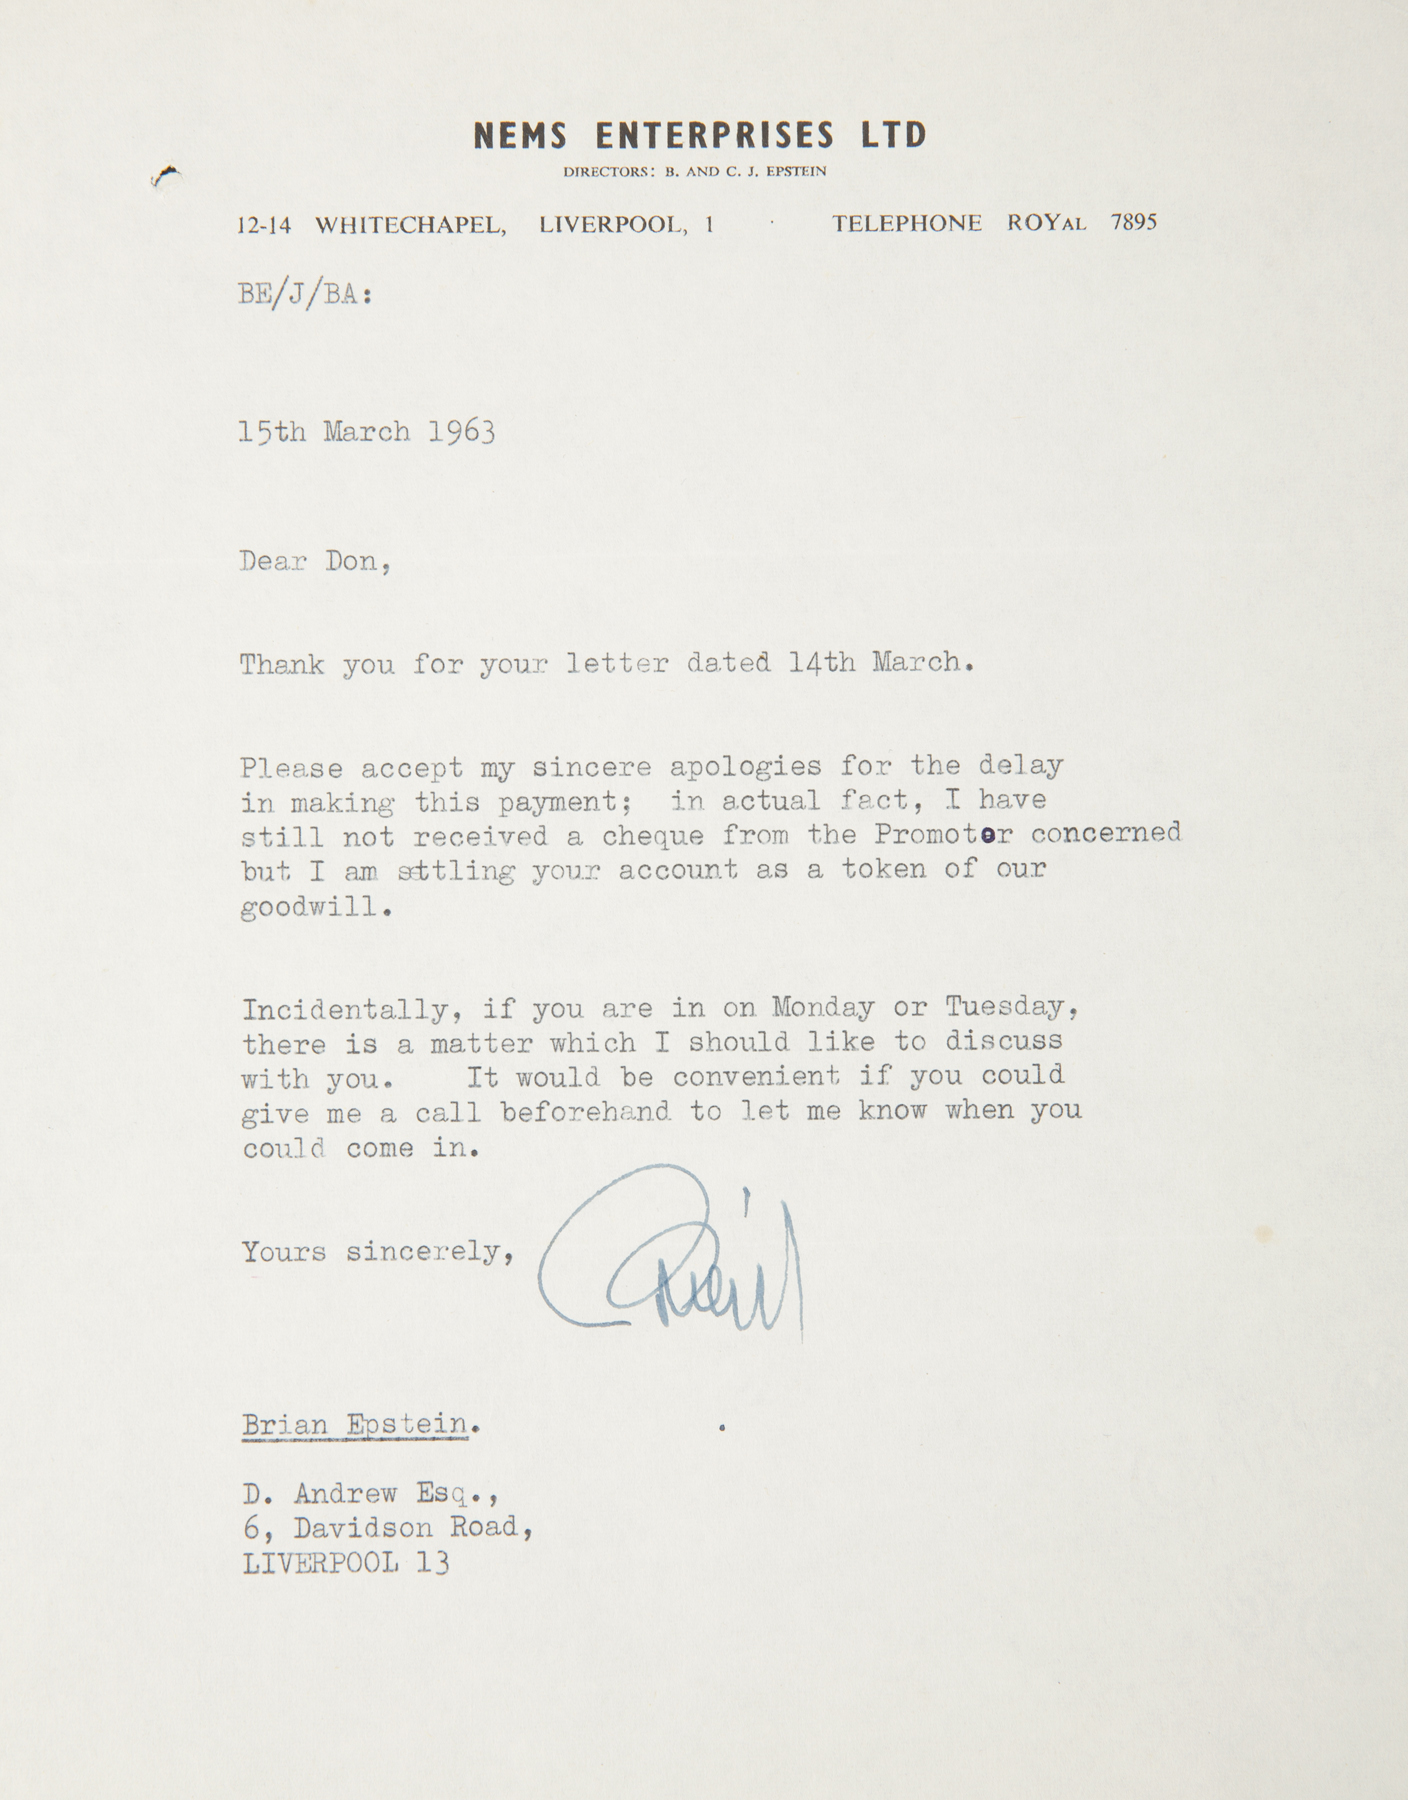 BRIAN EPSTEIN SIGNED LETTER A Brian Epstein signed letter written on NEMS Enterprises Ltd.